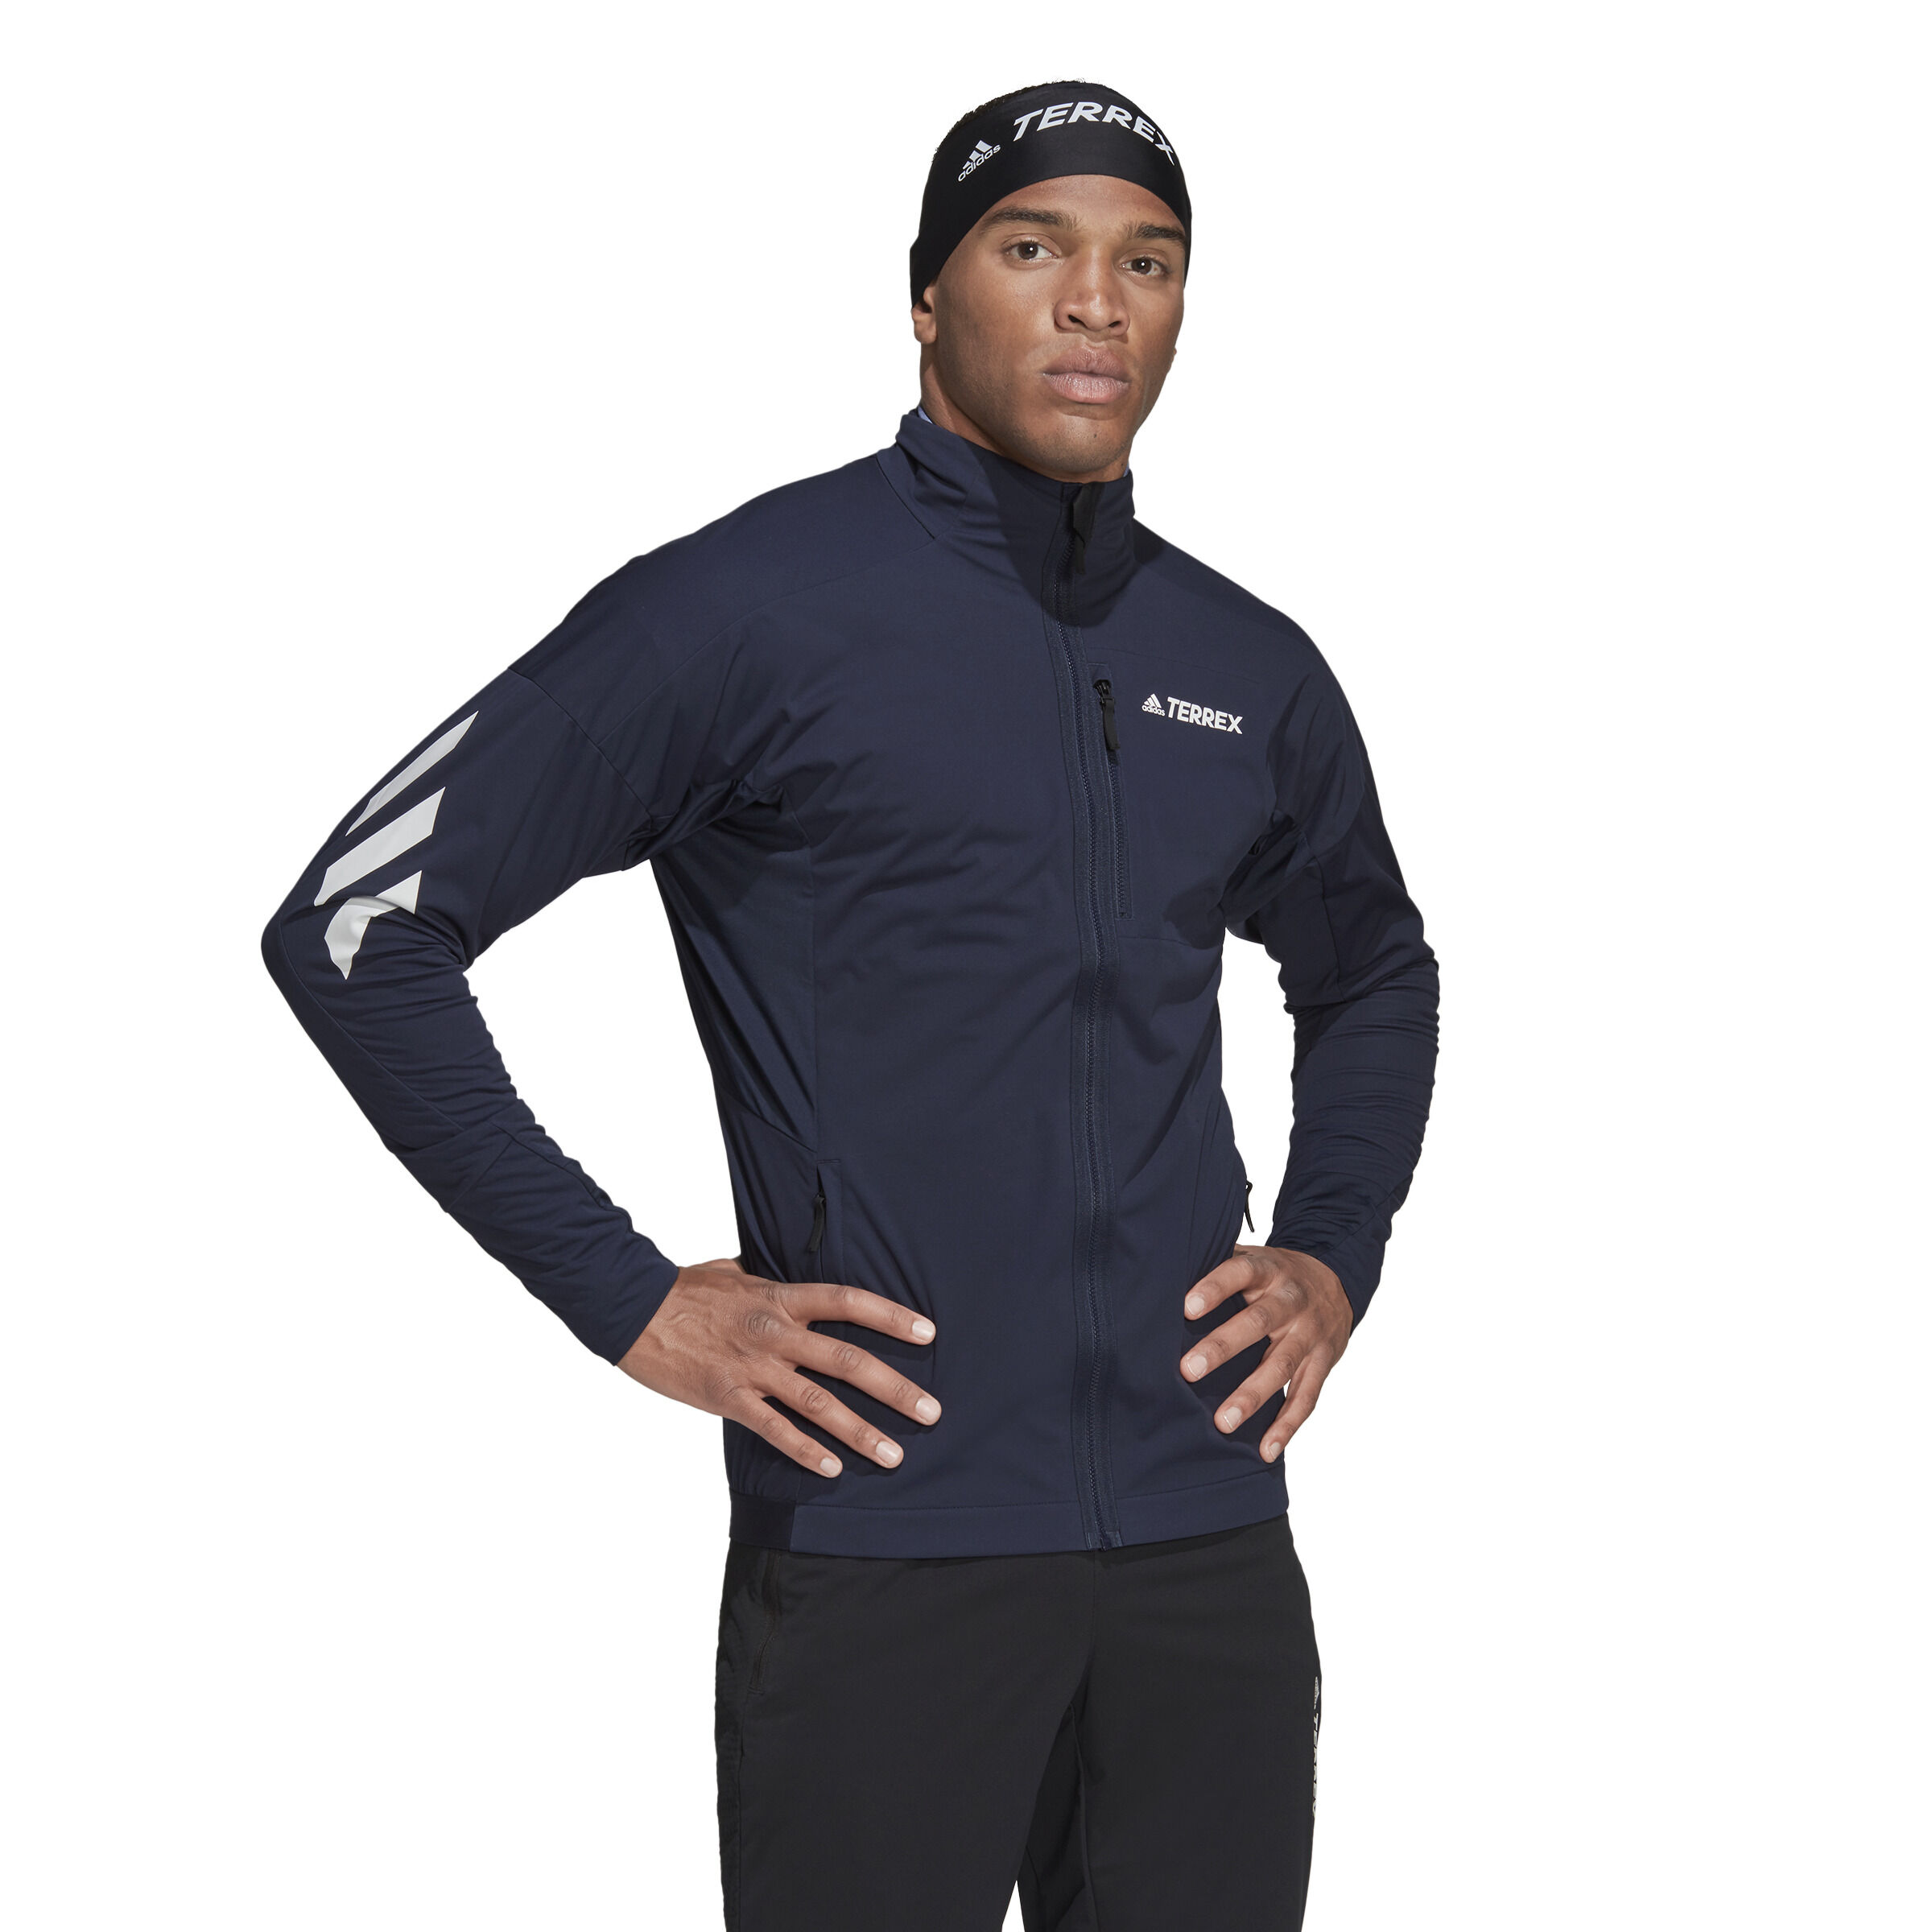 Adidas Terrex Xperior XC Jacket - Softshell jacket - Men's